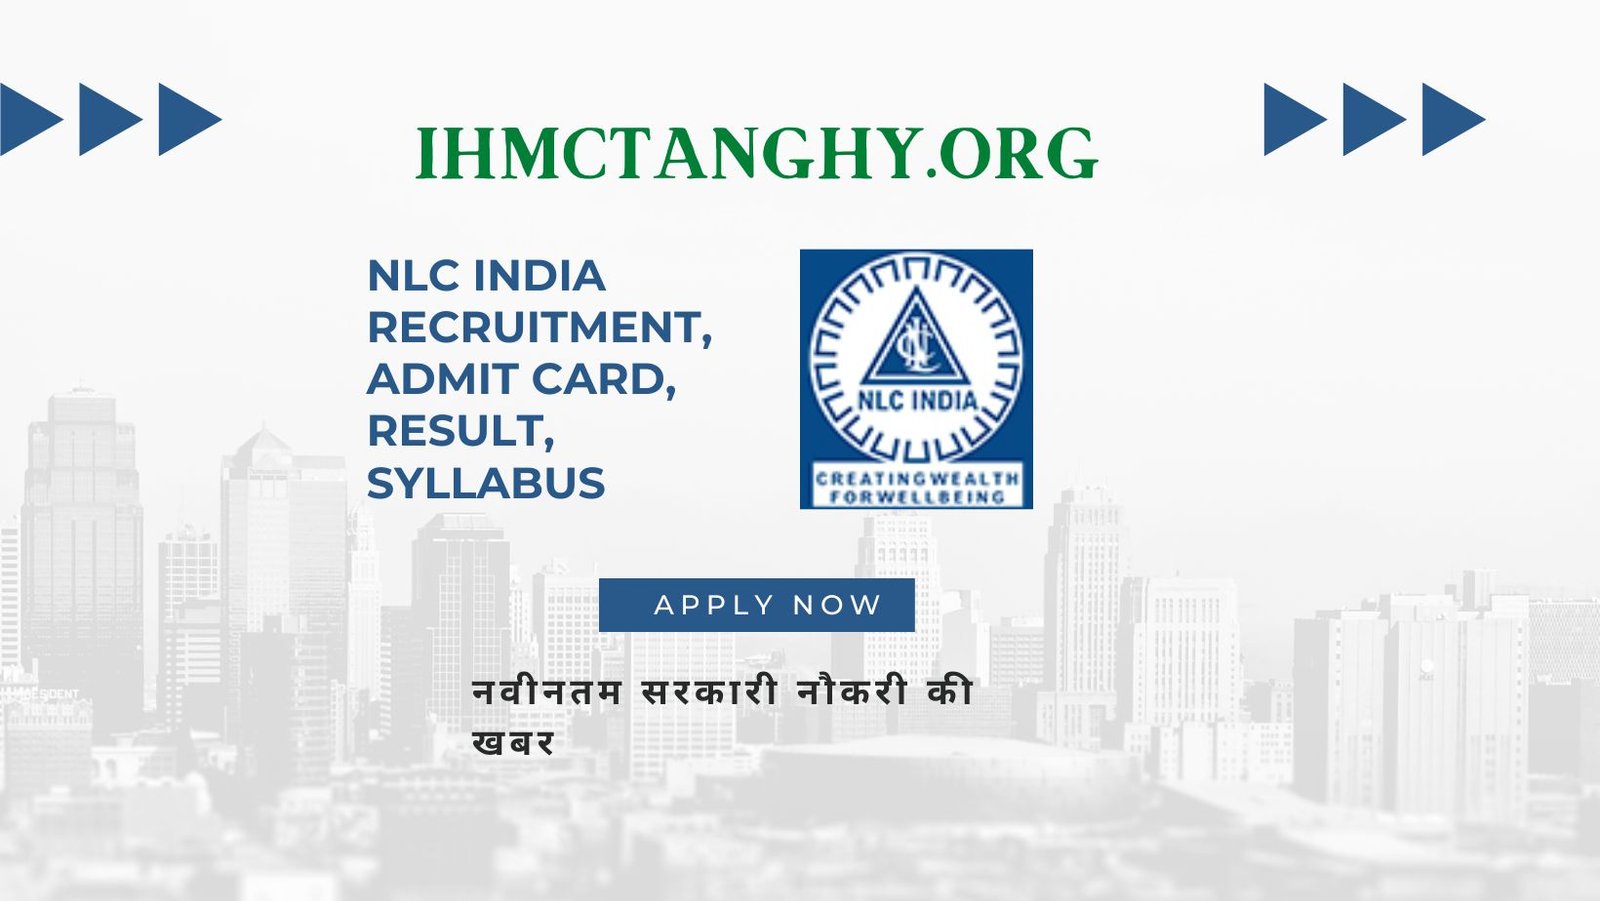 NLC India Recruitment